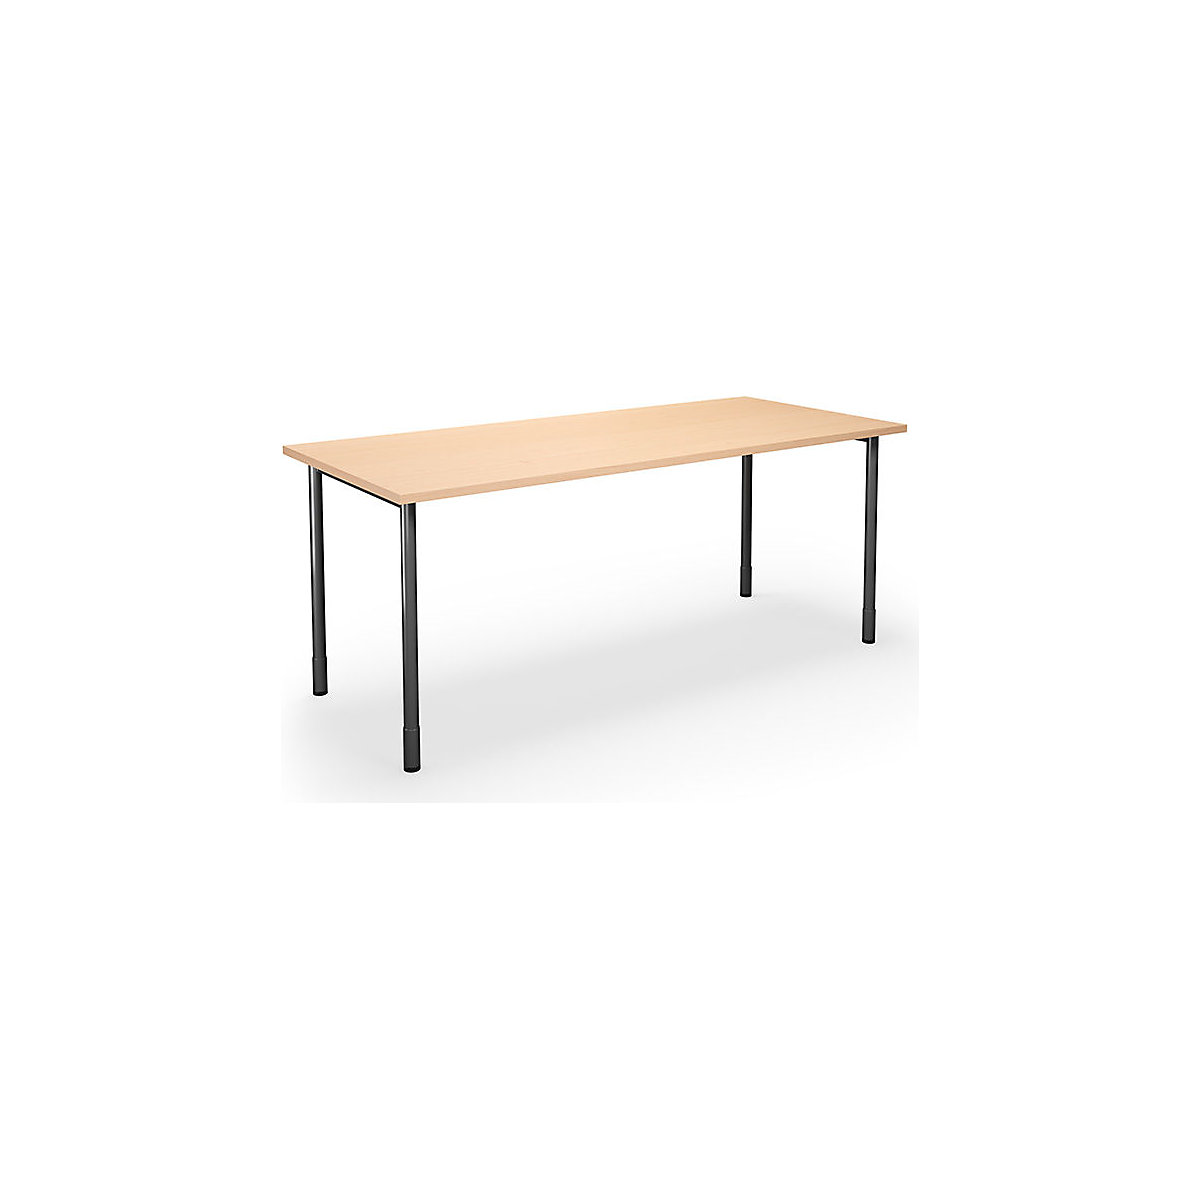 DUO-C multi-purpose desk, straight tabletop, WxD 1800 x 800 mm, birch, black-15